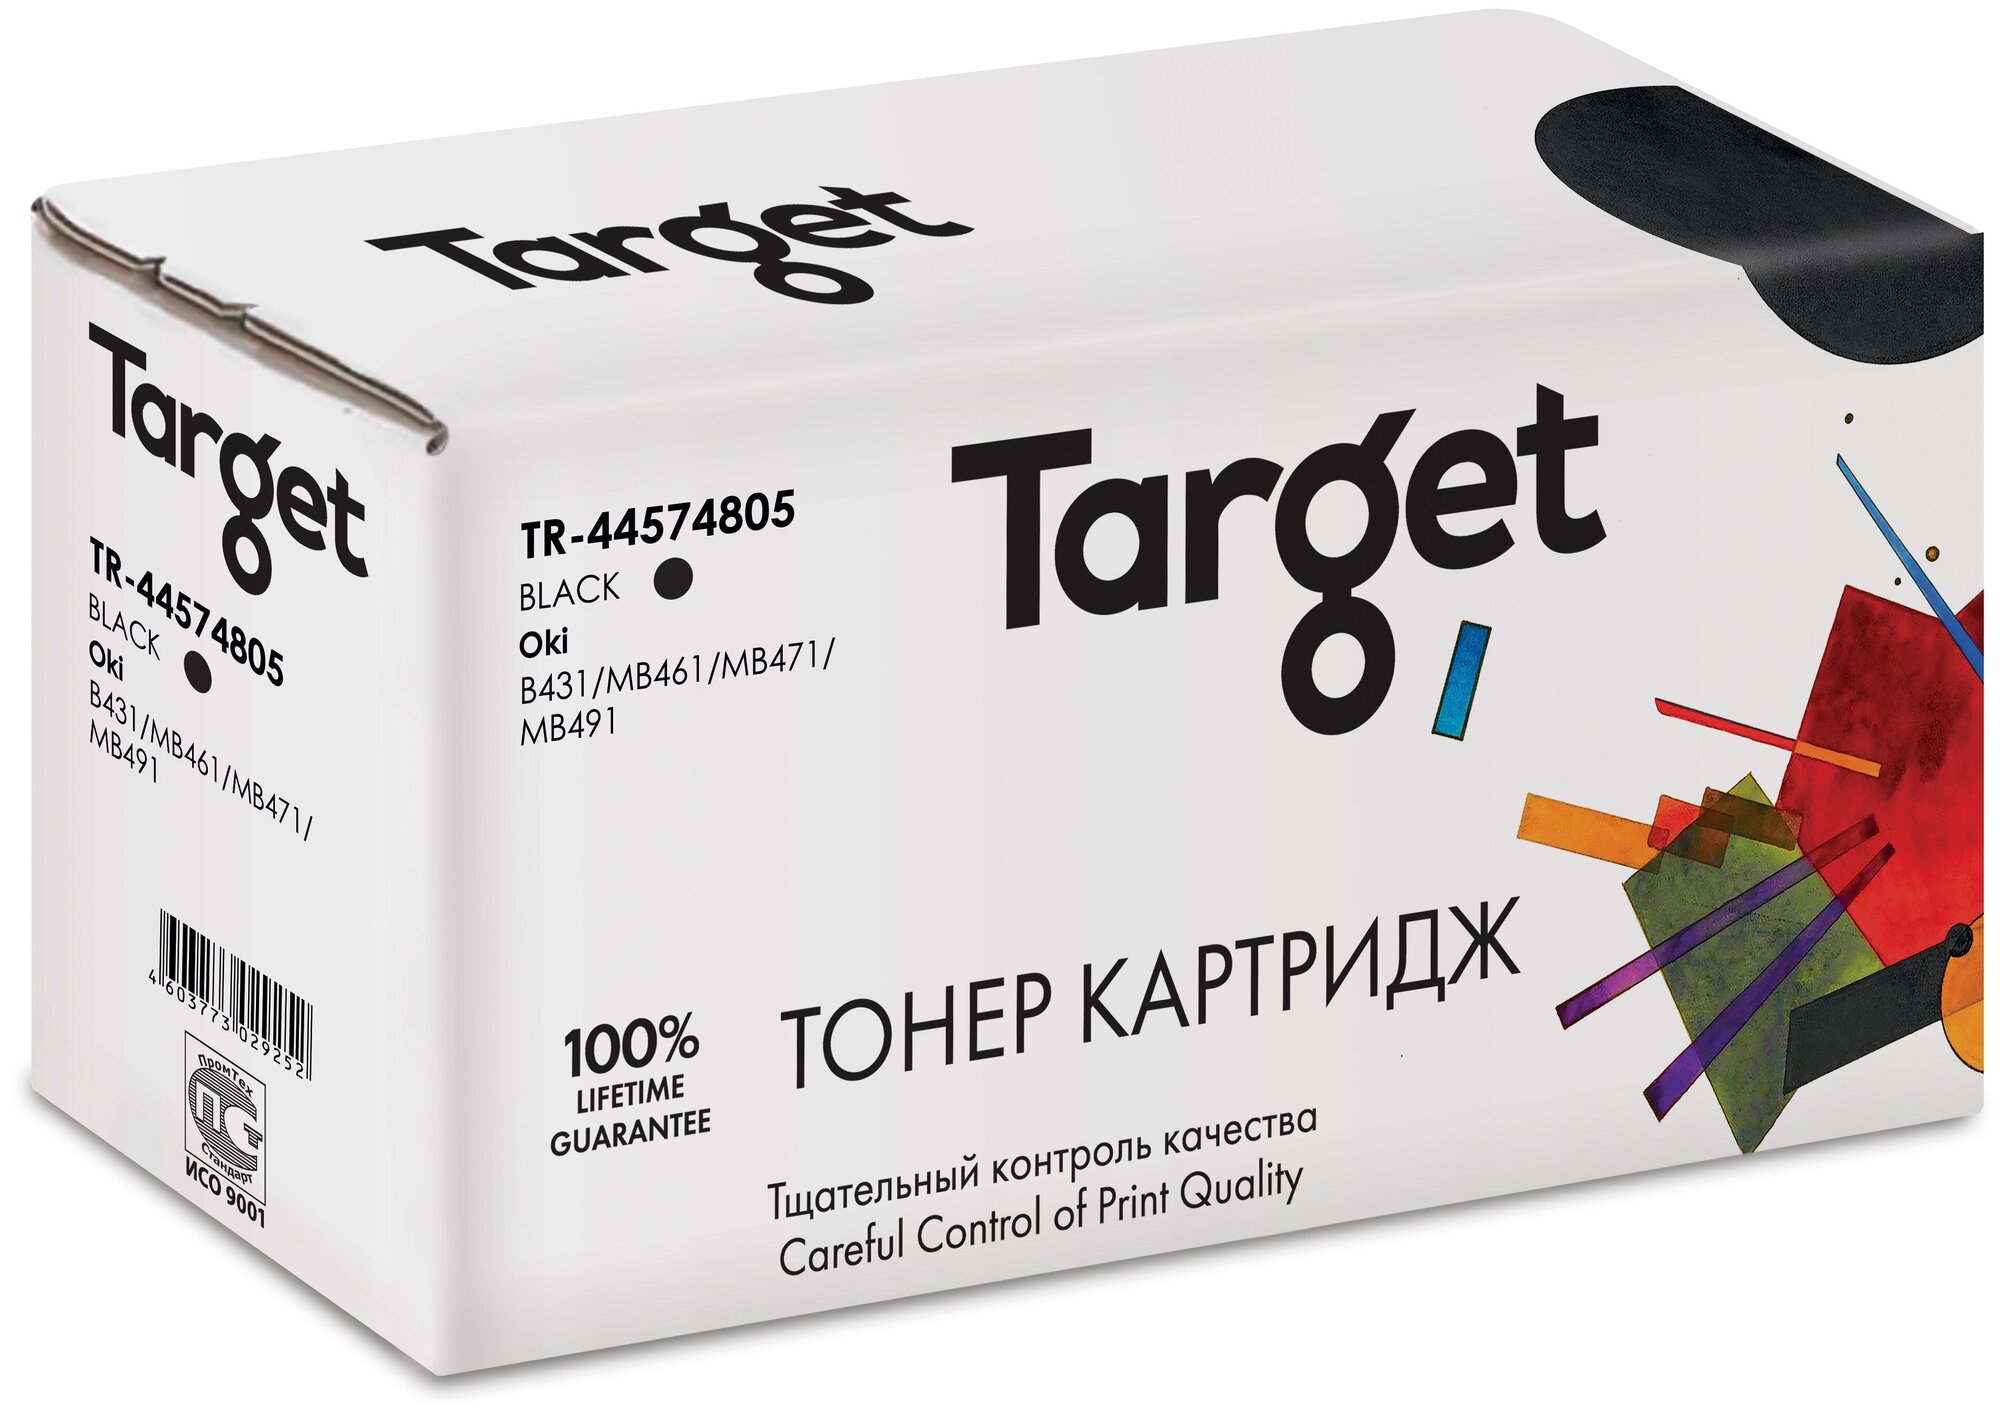 Тонер-картридж Target 44574805, черный, для лазерного принтера, совместимый